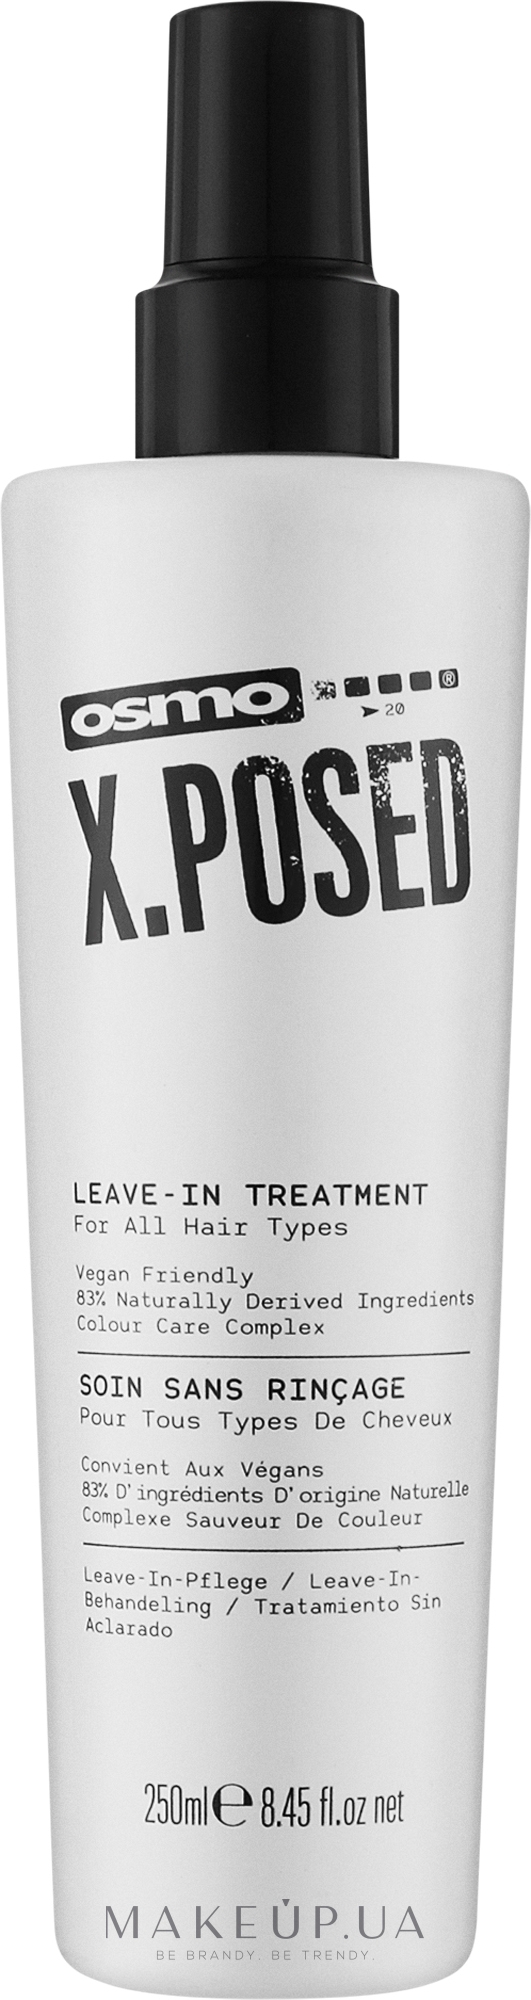 Безсульфатний незмивний догляд для волосся - Osmo X.Posed Leave-In Treatment — фото 250ml